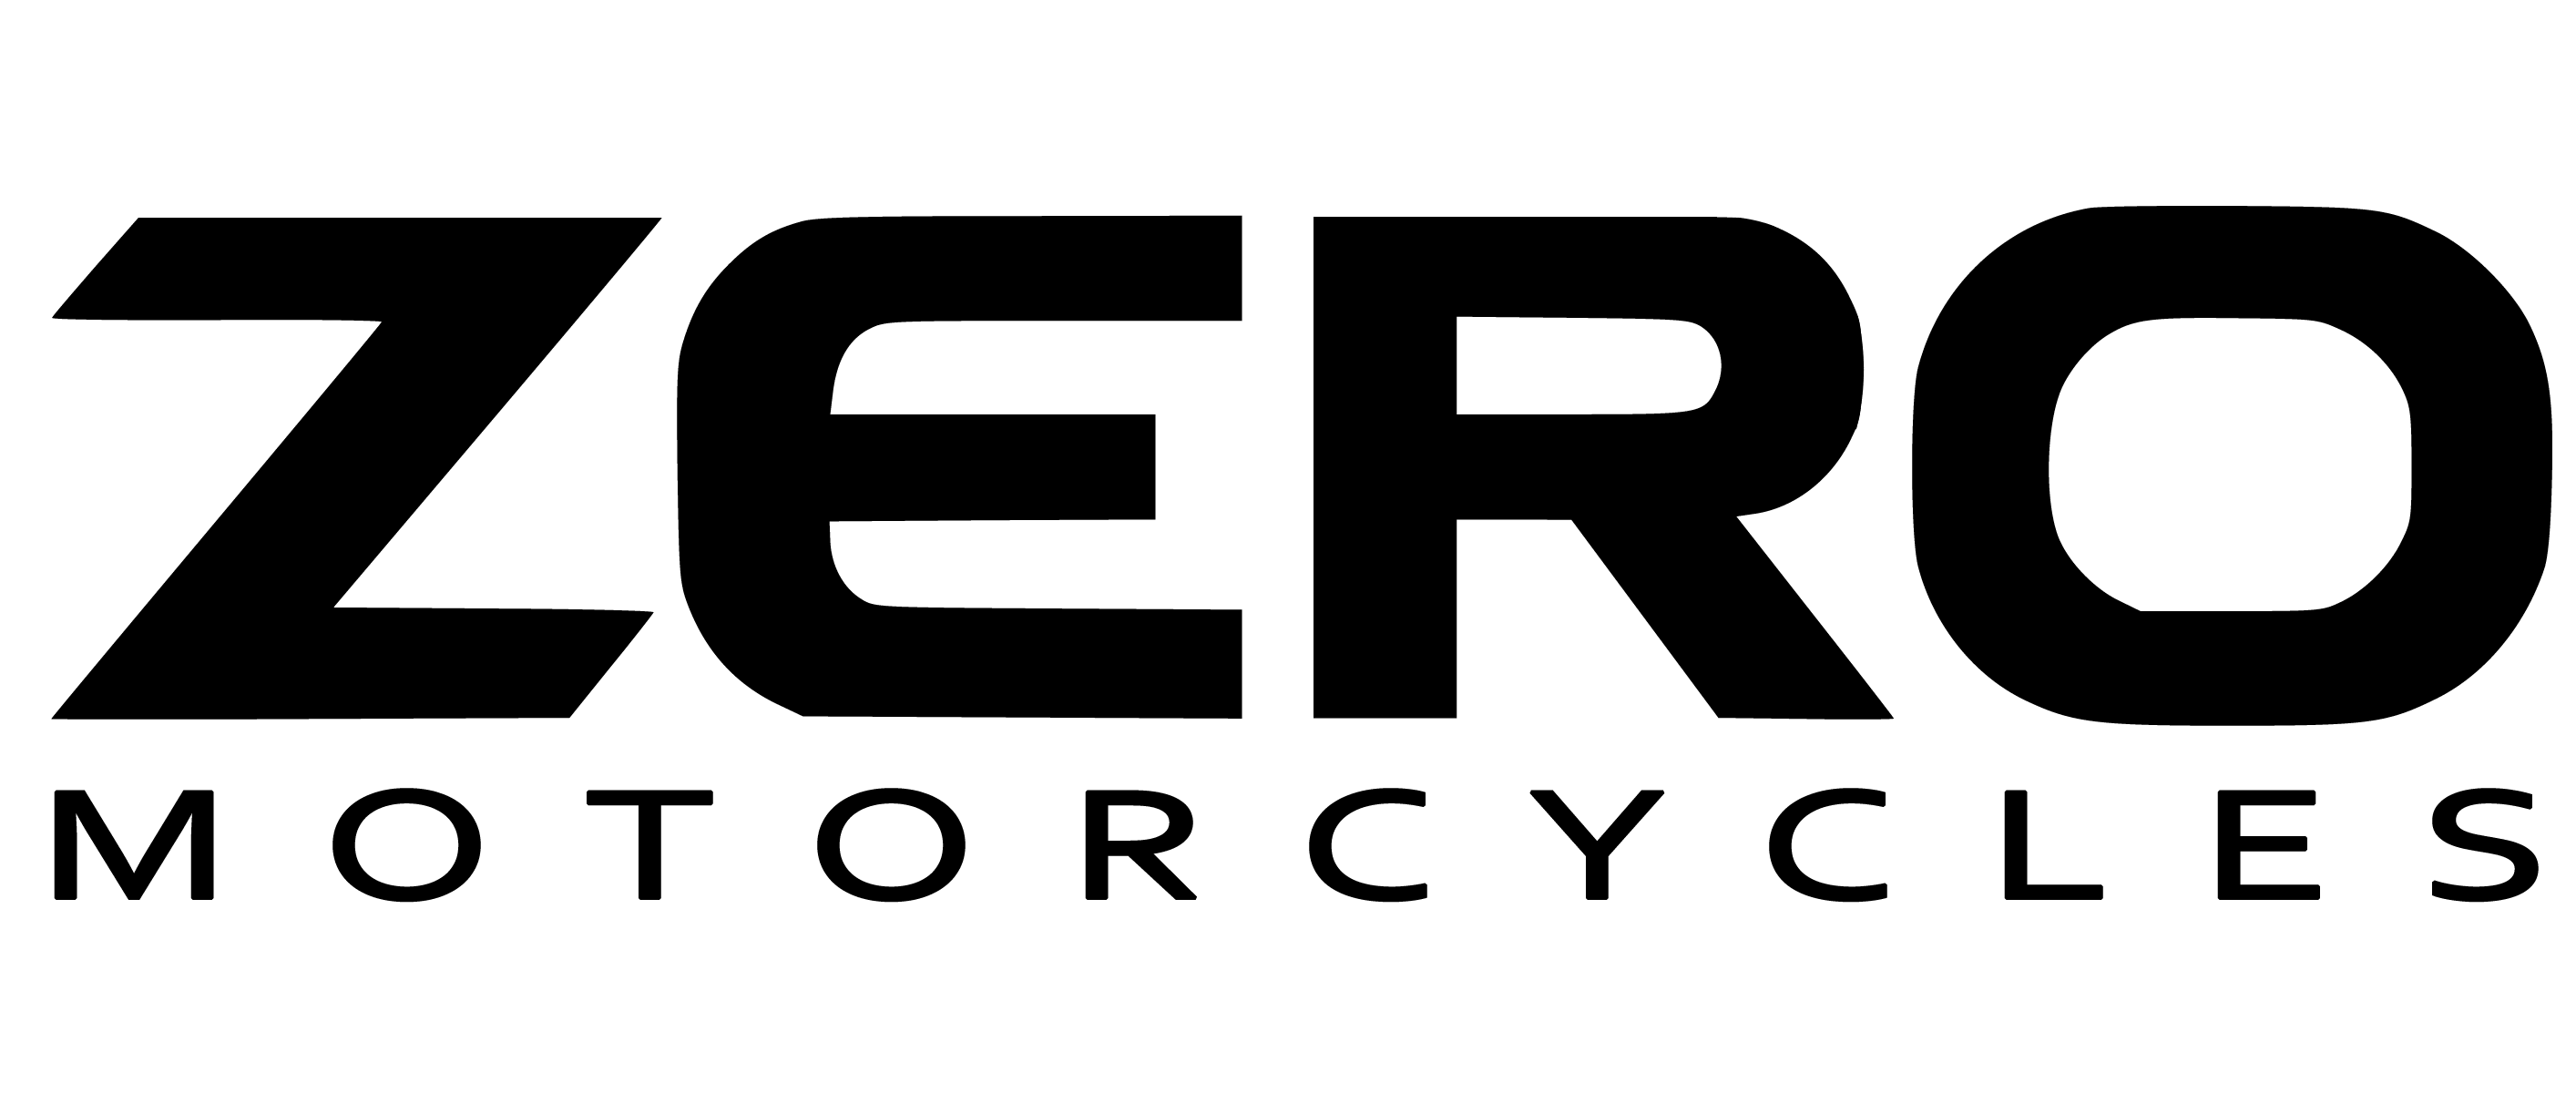 Zero Logo - Zero motorcycle logo history and Meaning, bike emblem